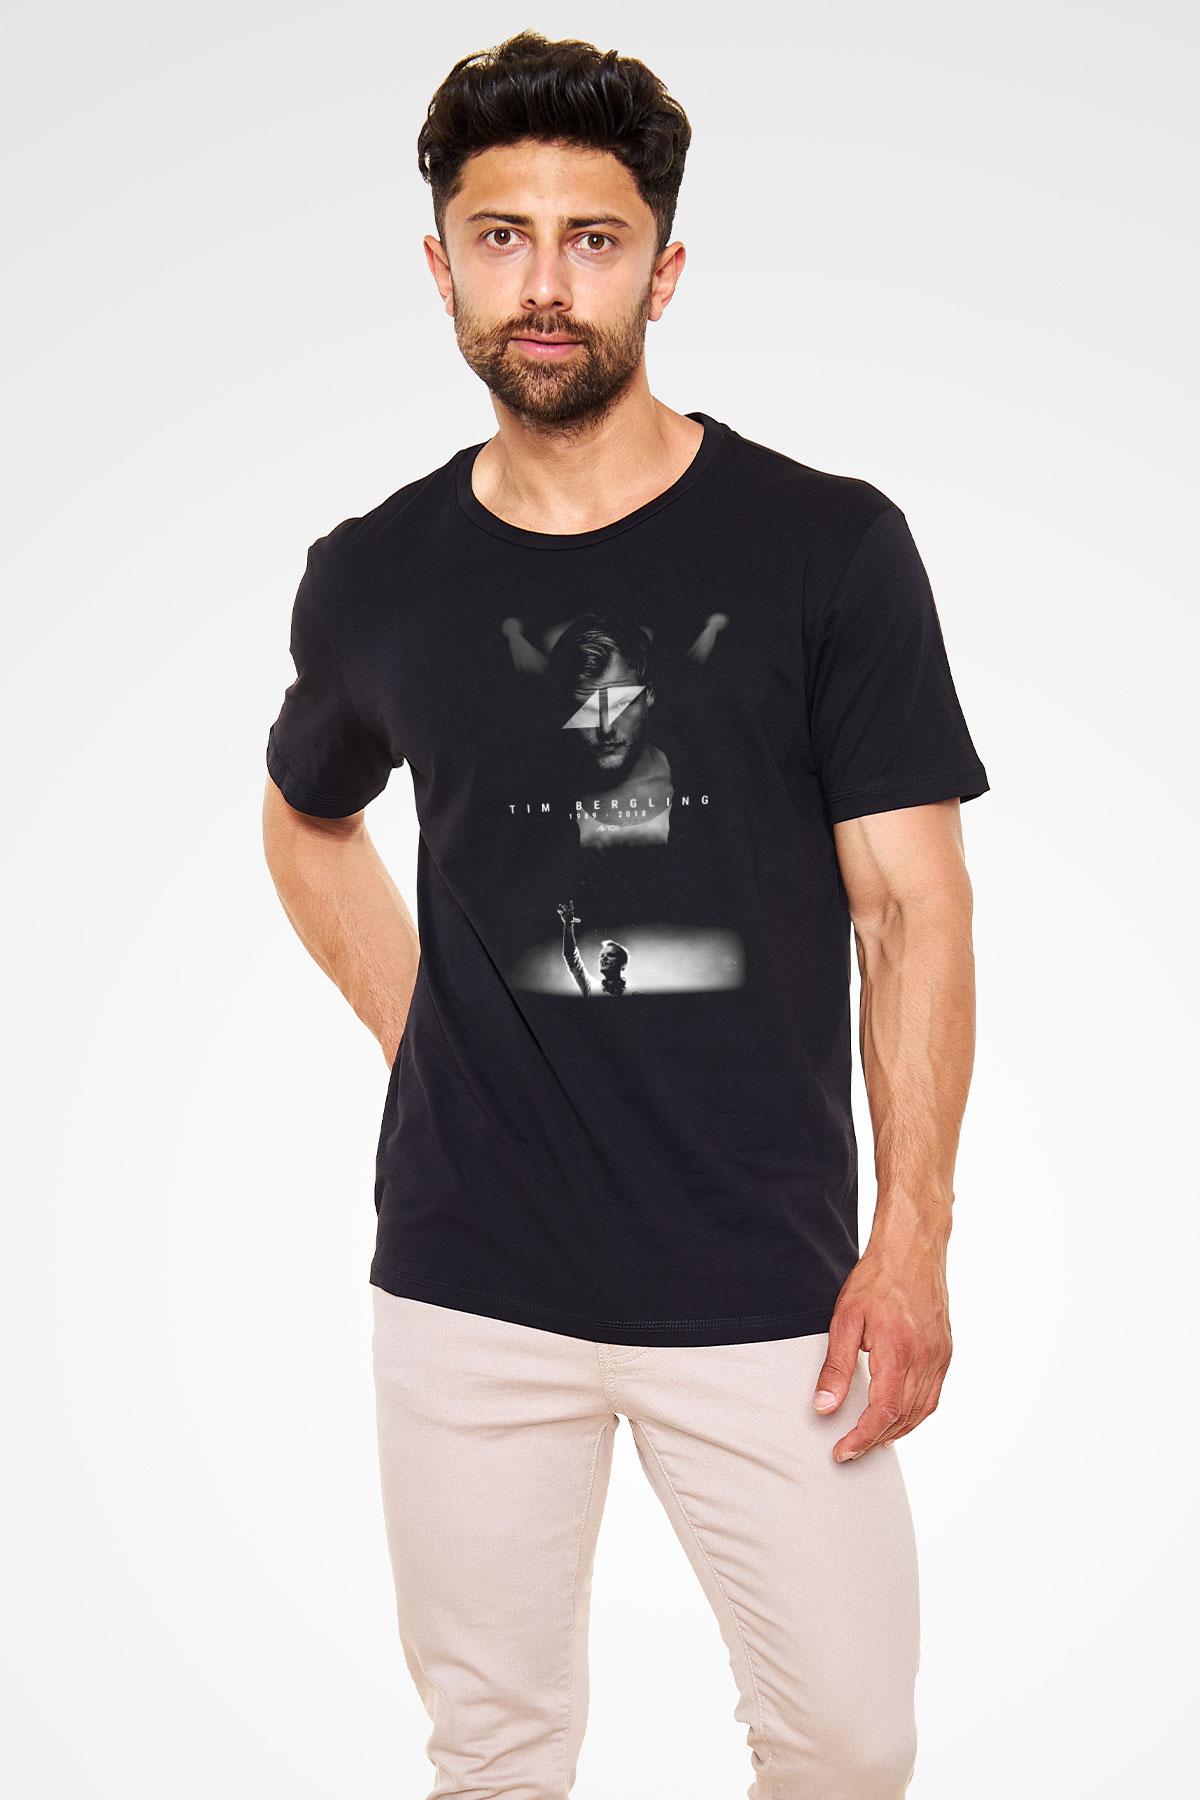 Avicii Siyah Unisex Tişört T-Shirt - TişörtFabrikası